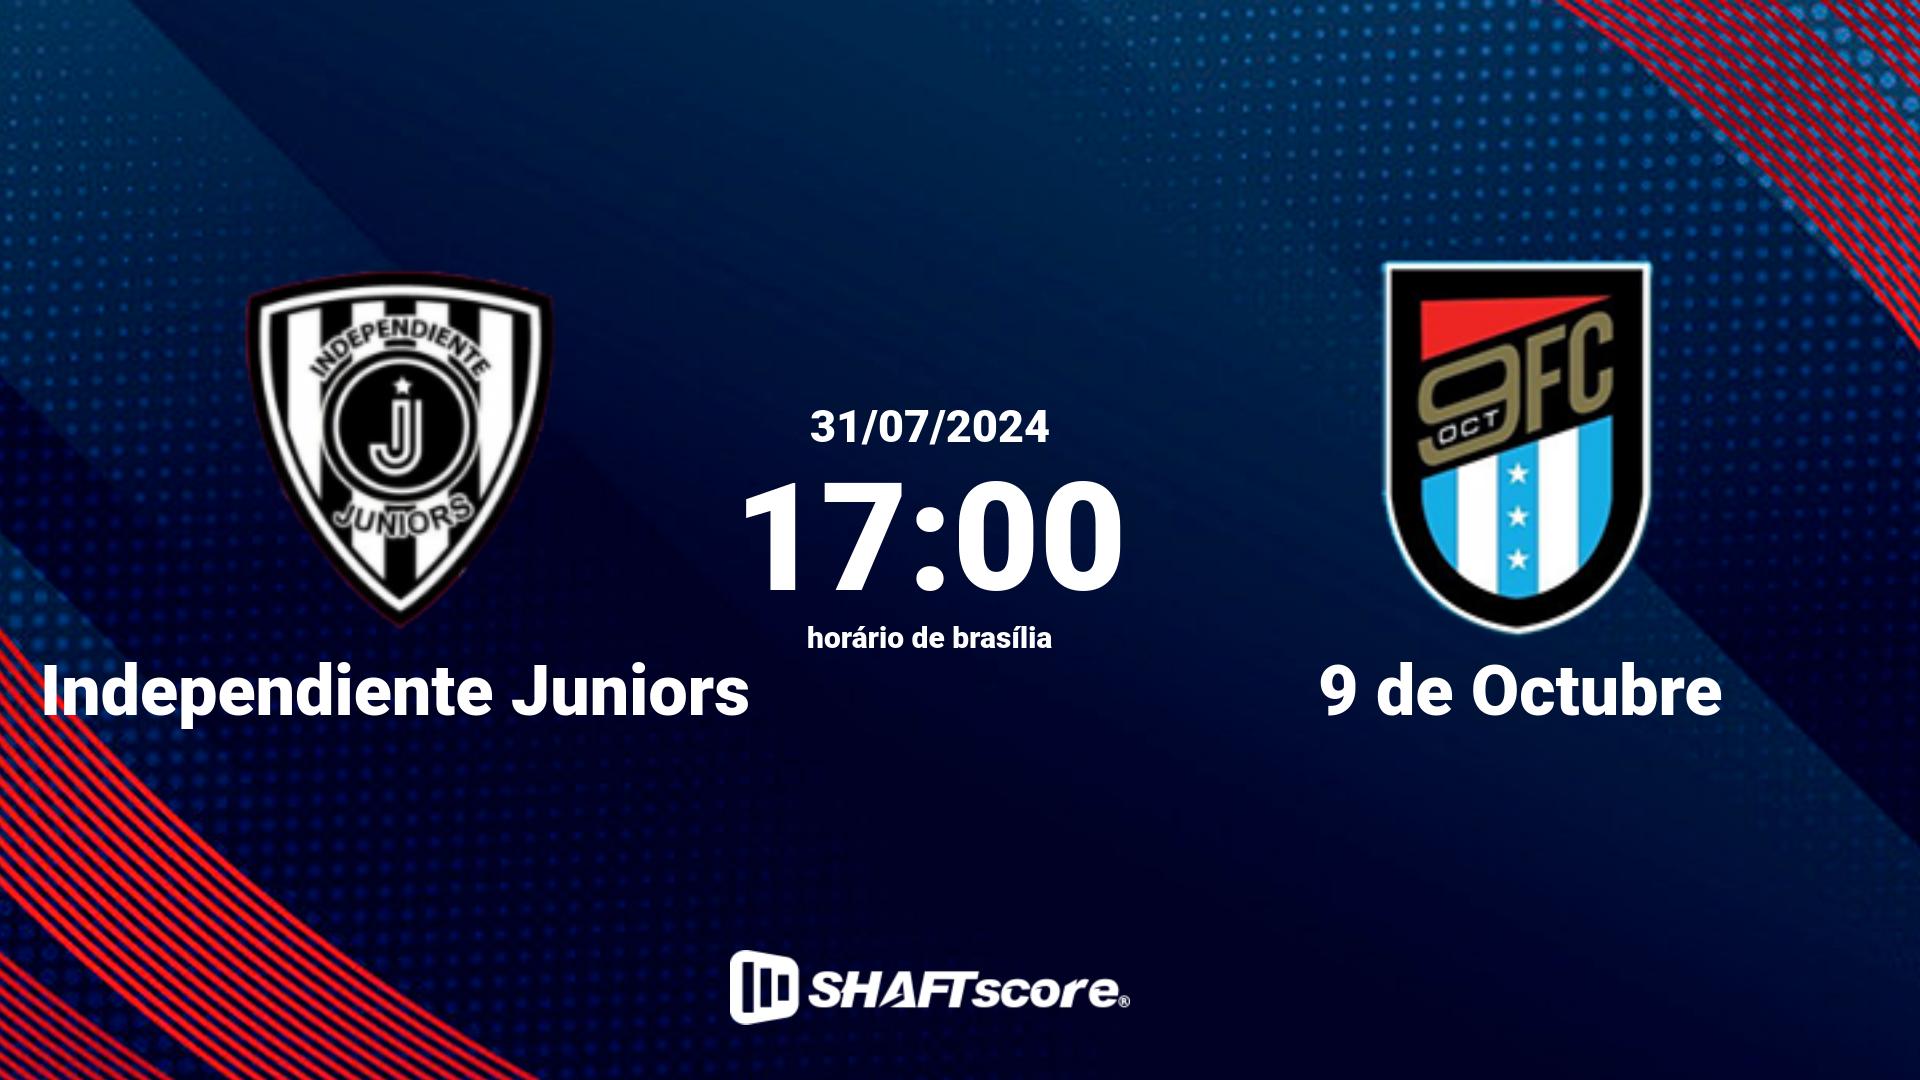 Estatísticas do jogo Independiente Juniors vs 9 de Octubre 31.07 17:00